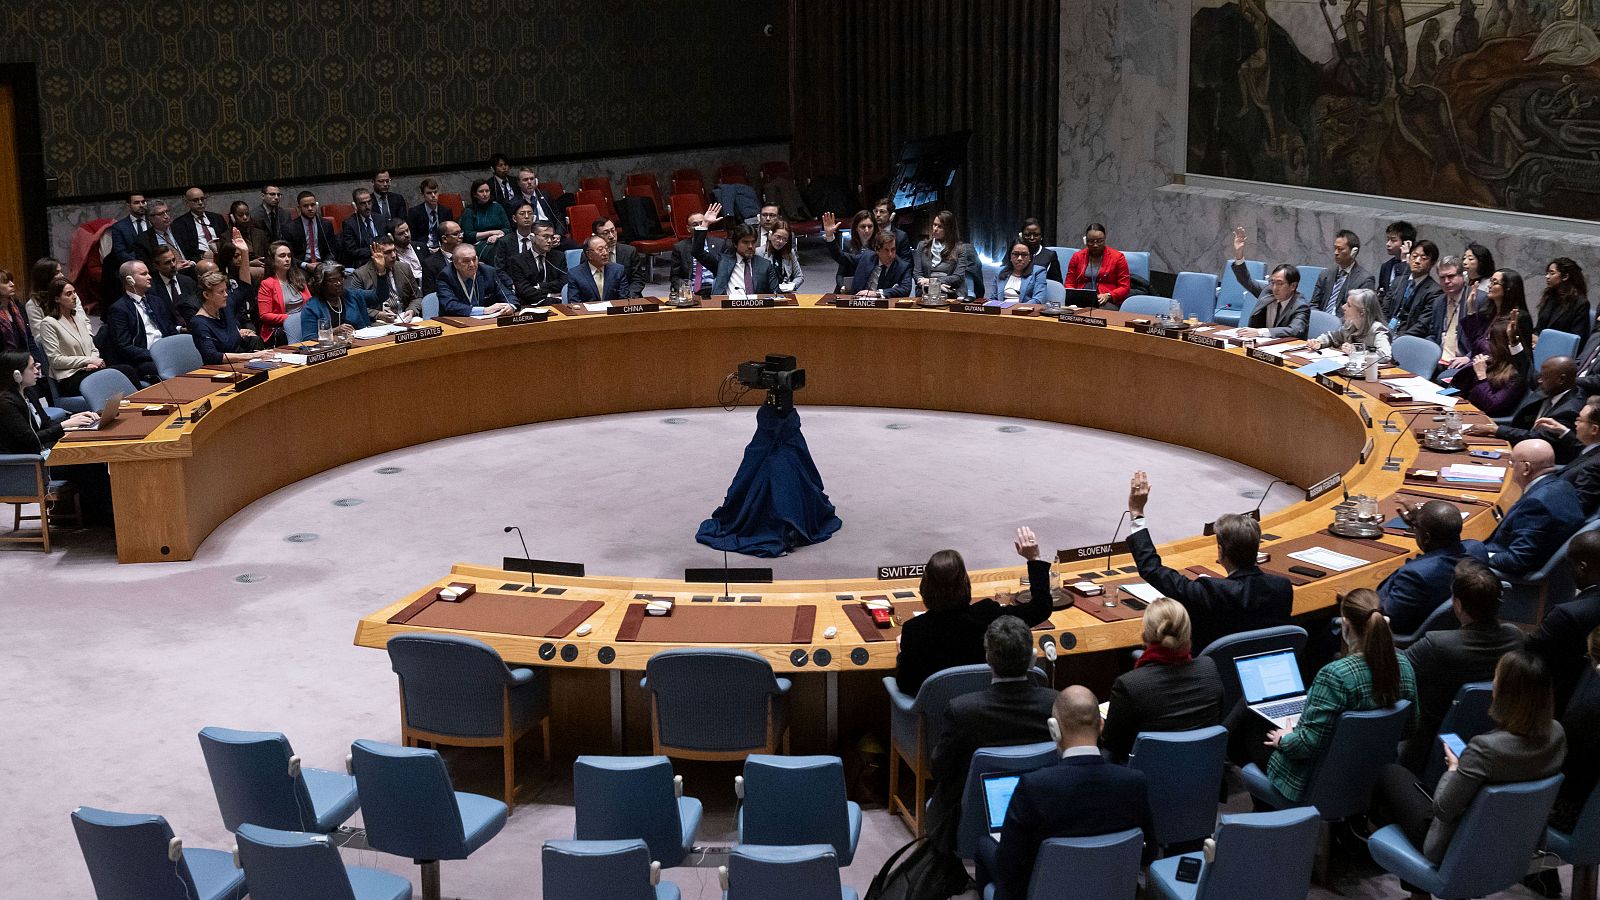 Los representantes de los países miembros durante una reunión del Consejo de Seguridad en la sede de las Naciones Unidas